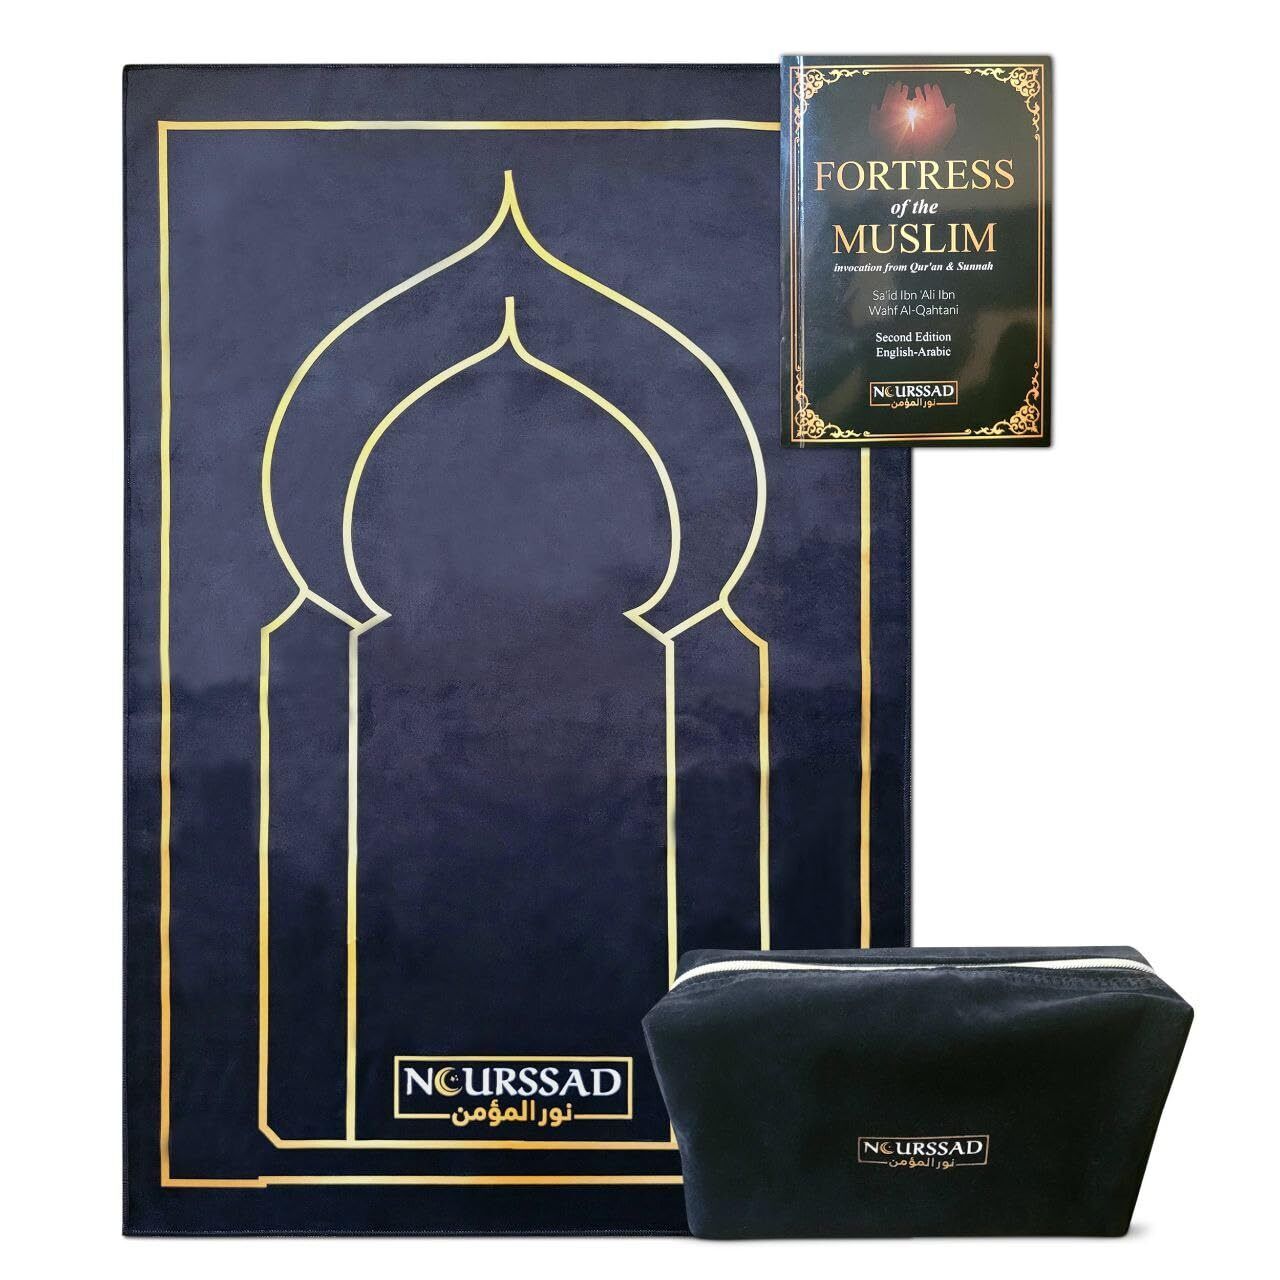 NOURSSAD Luxury Velvet Muslim Prayer Mat - Portable, Travel-Friendly Islamic